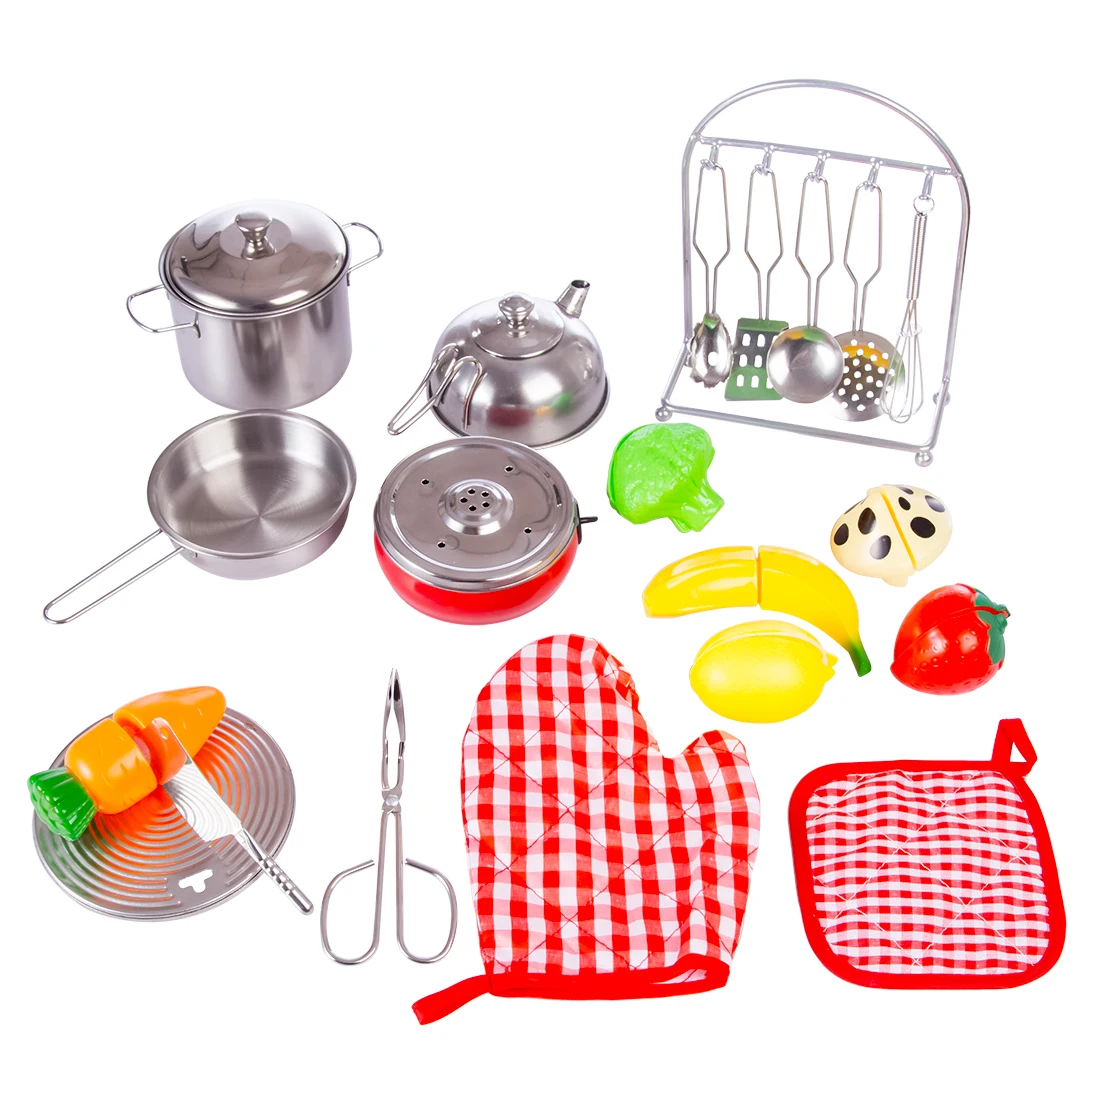 21 шт.. Stai nless стальной детский дом кухонная игрушка кухонная посуда для приготовления пищи игрушки развивающие кухонные принадлежности